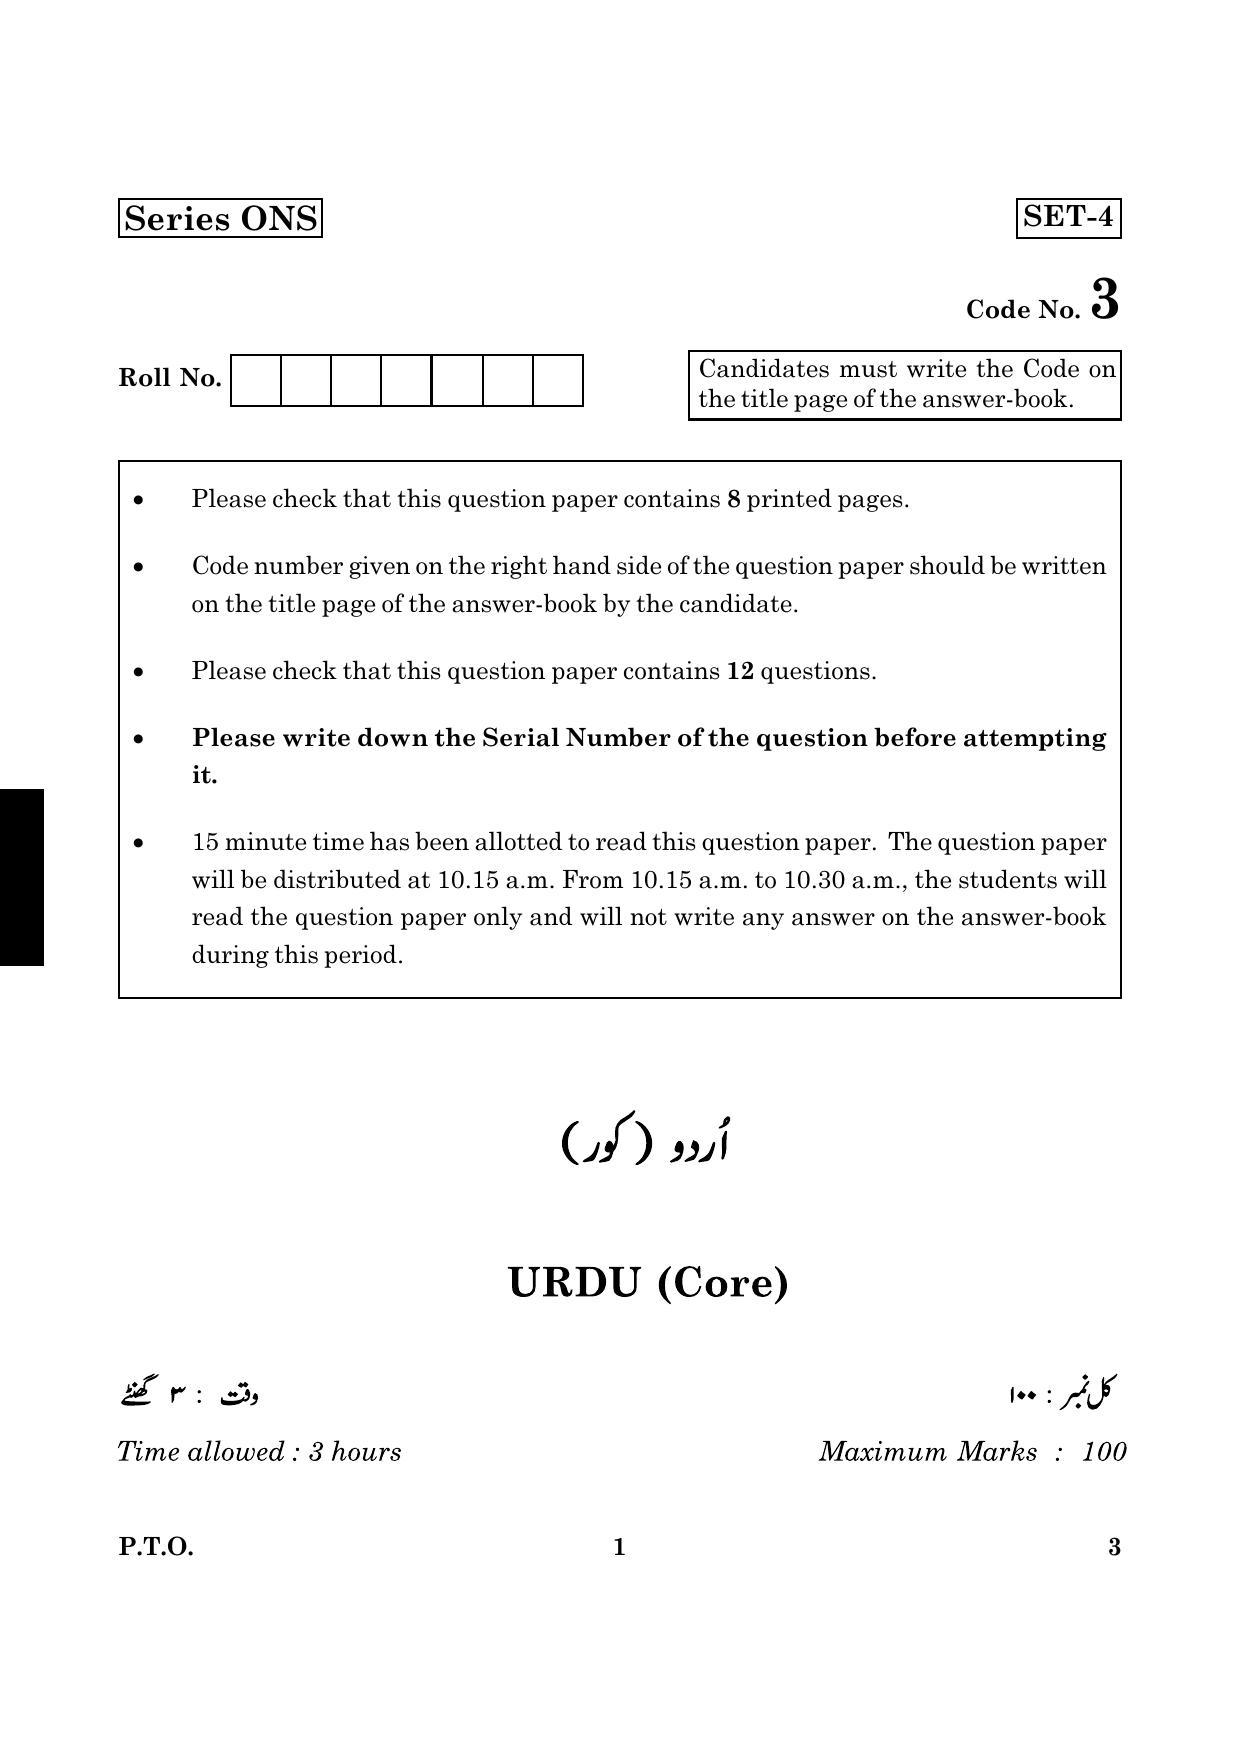 CBSE Class 12 003 Urdu Core 2016 Question Paper - Page 1